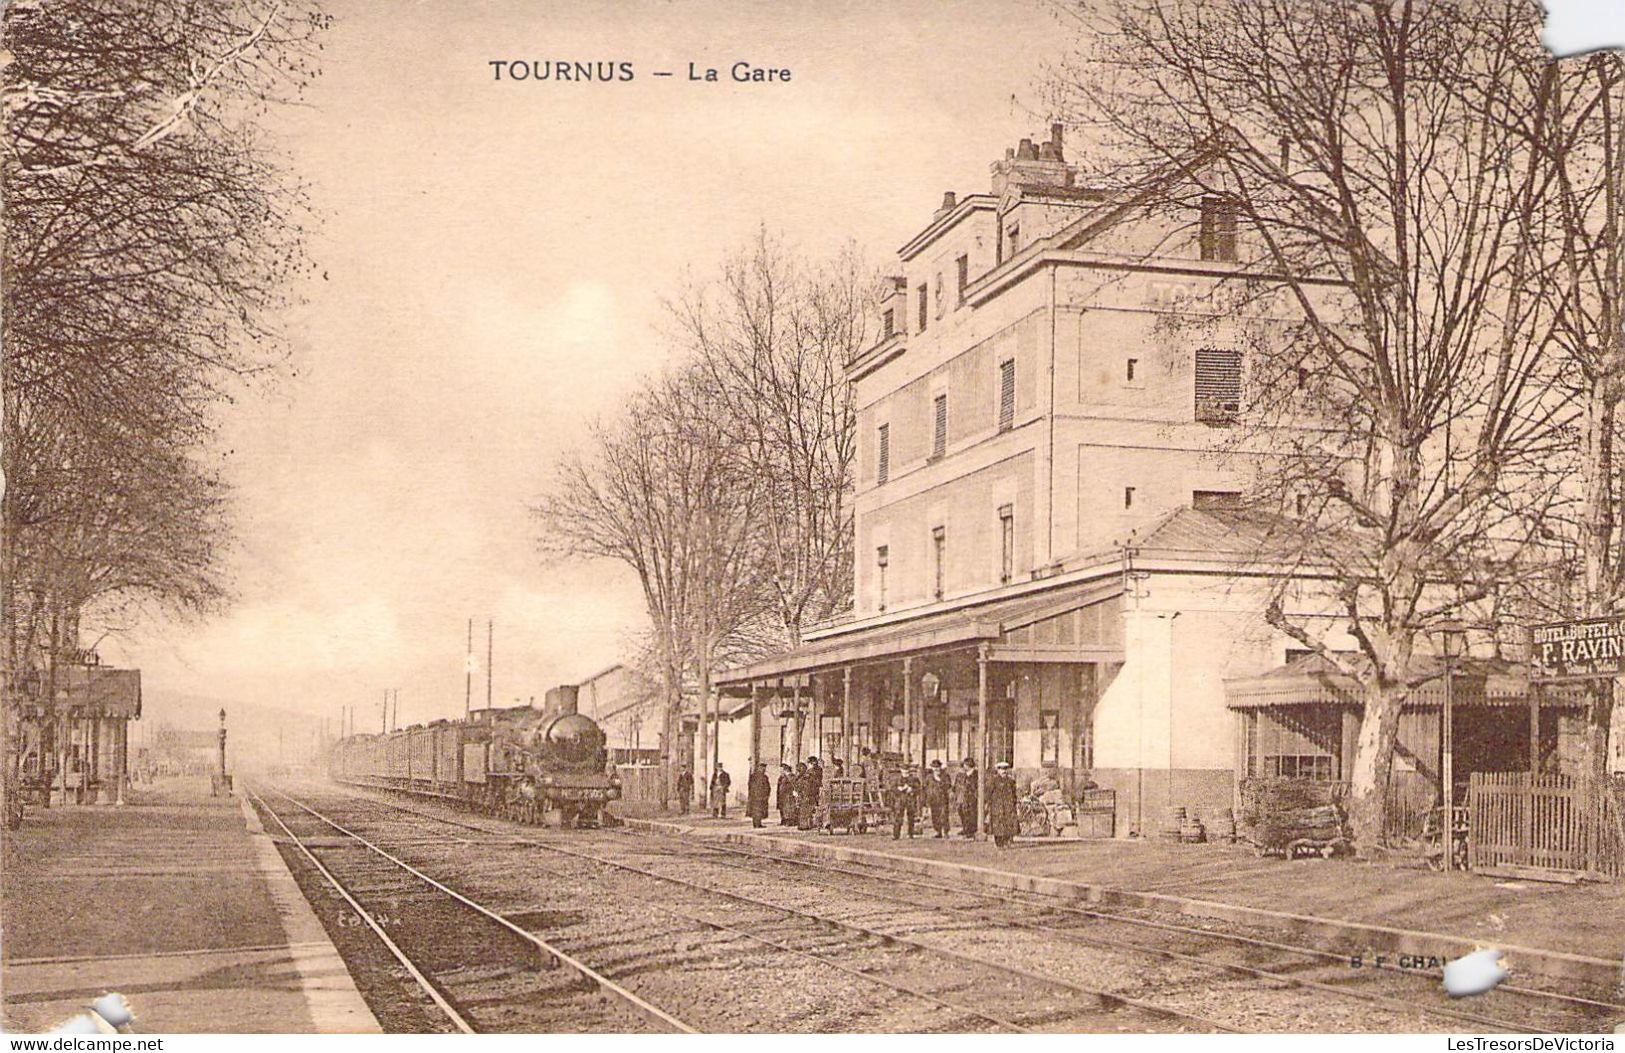 CPA Thèmes - Chemin De Fer - Tournus - La Gare - Imprimerie Bourgeois Chalon Sur Saône - B. F. Chalon - Trains - Stations With Trains